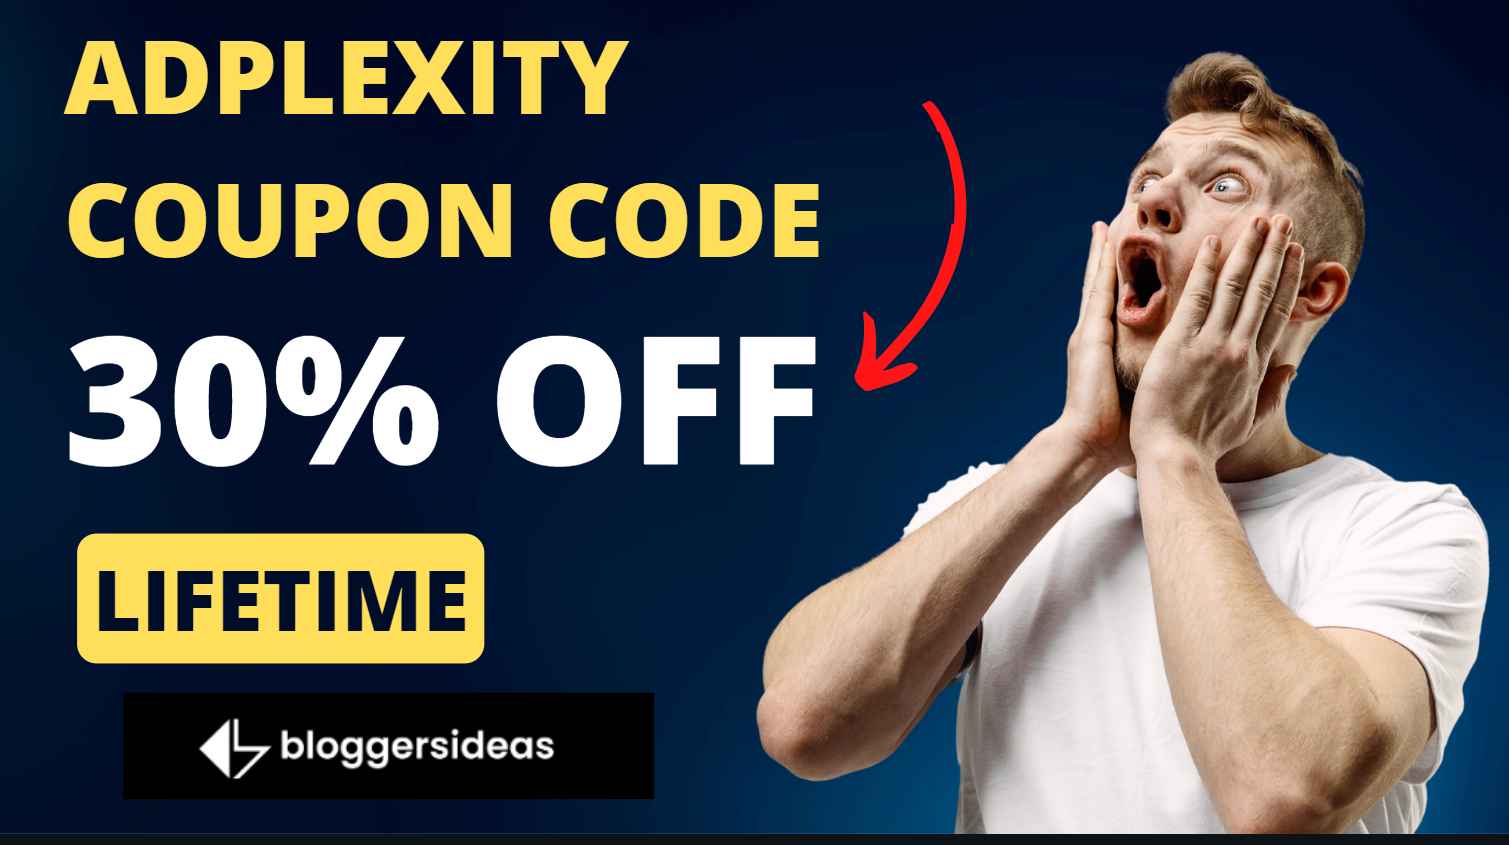 Adplexity coupon Code latest